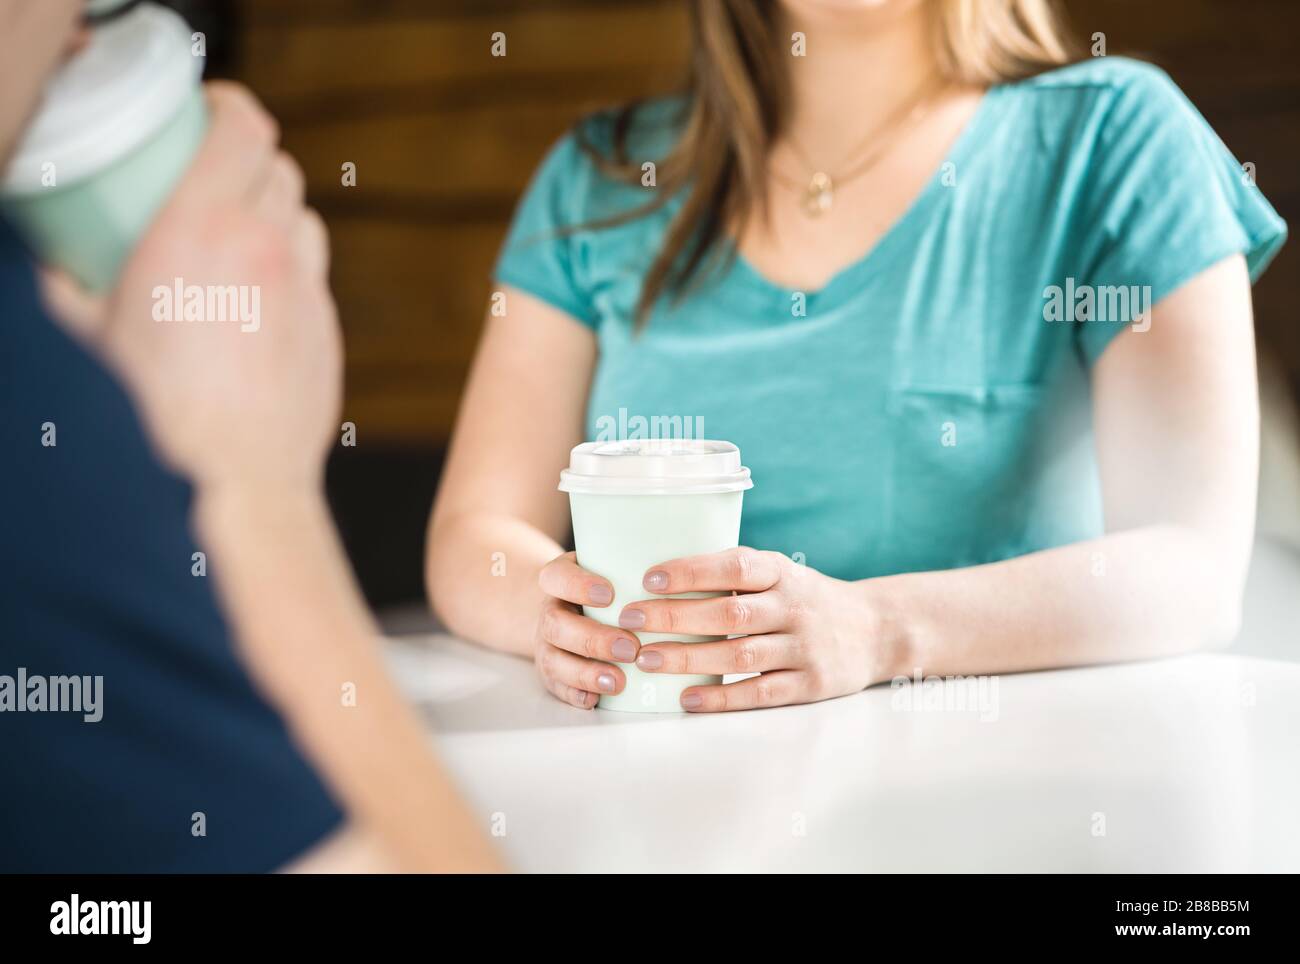 Mujer y hombre tomando café juntos. La gente habla y se reúne en el café. Fecha ciega o primera. Concepto de citas o amistad. Foto de stock